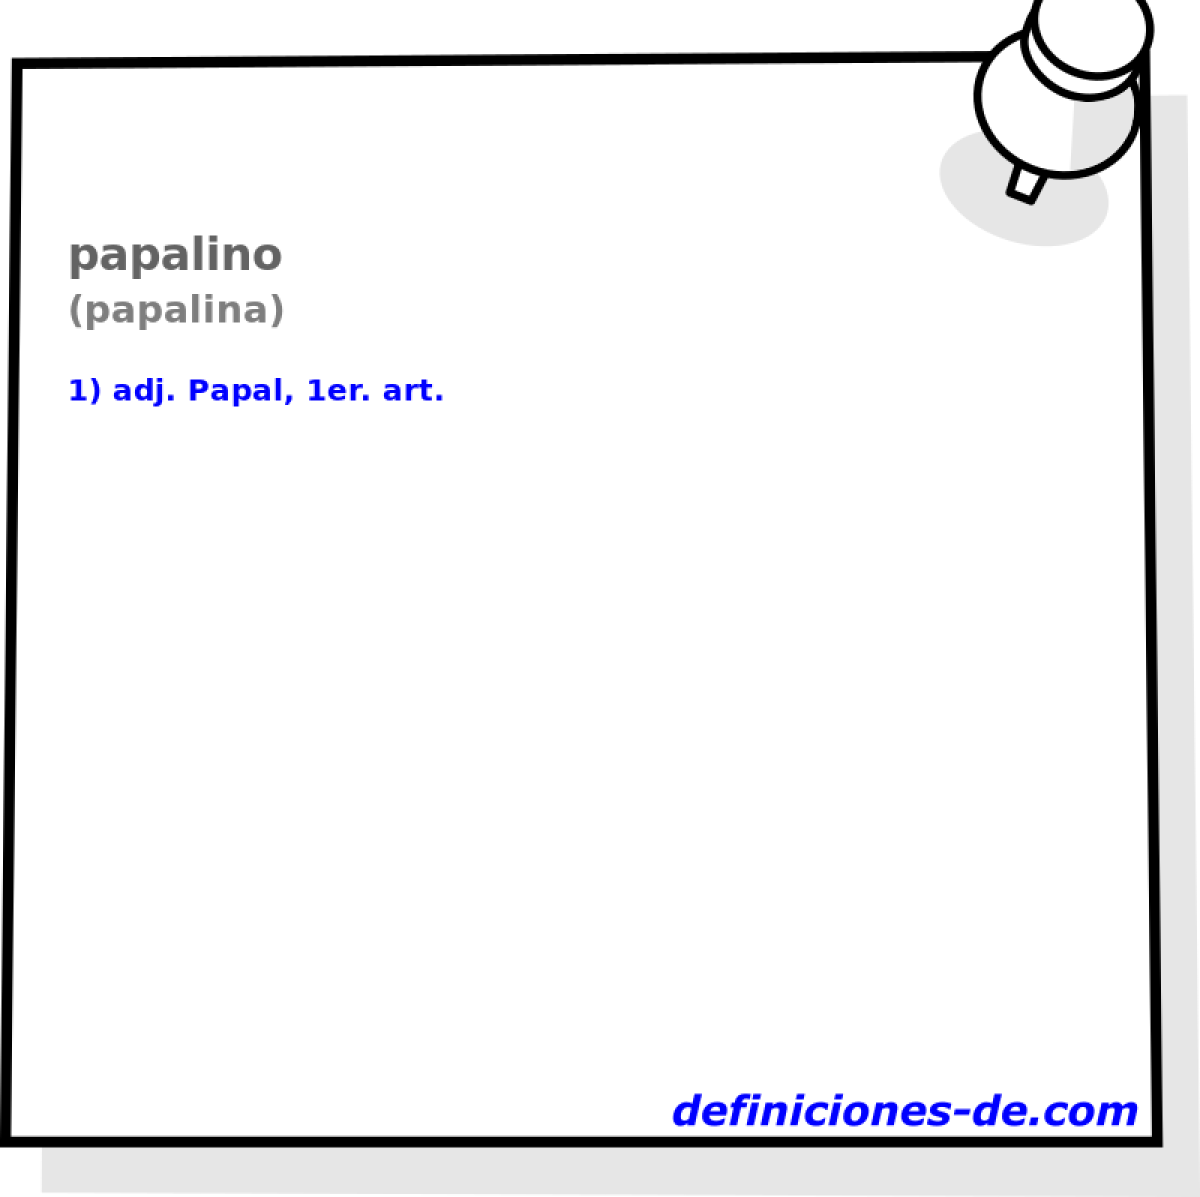 papalino (papalina)